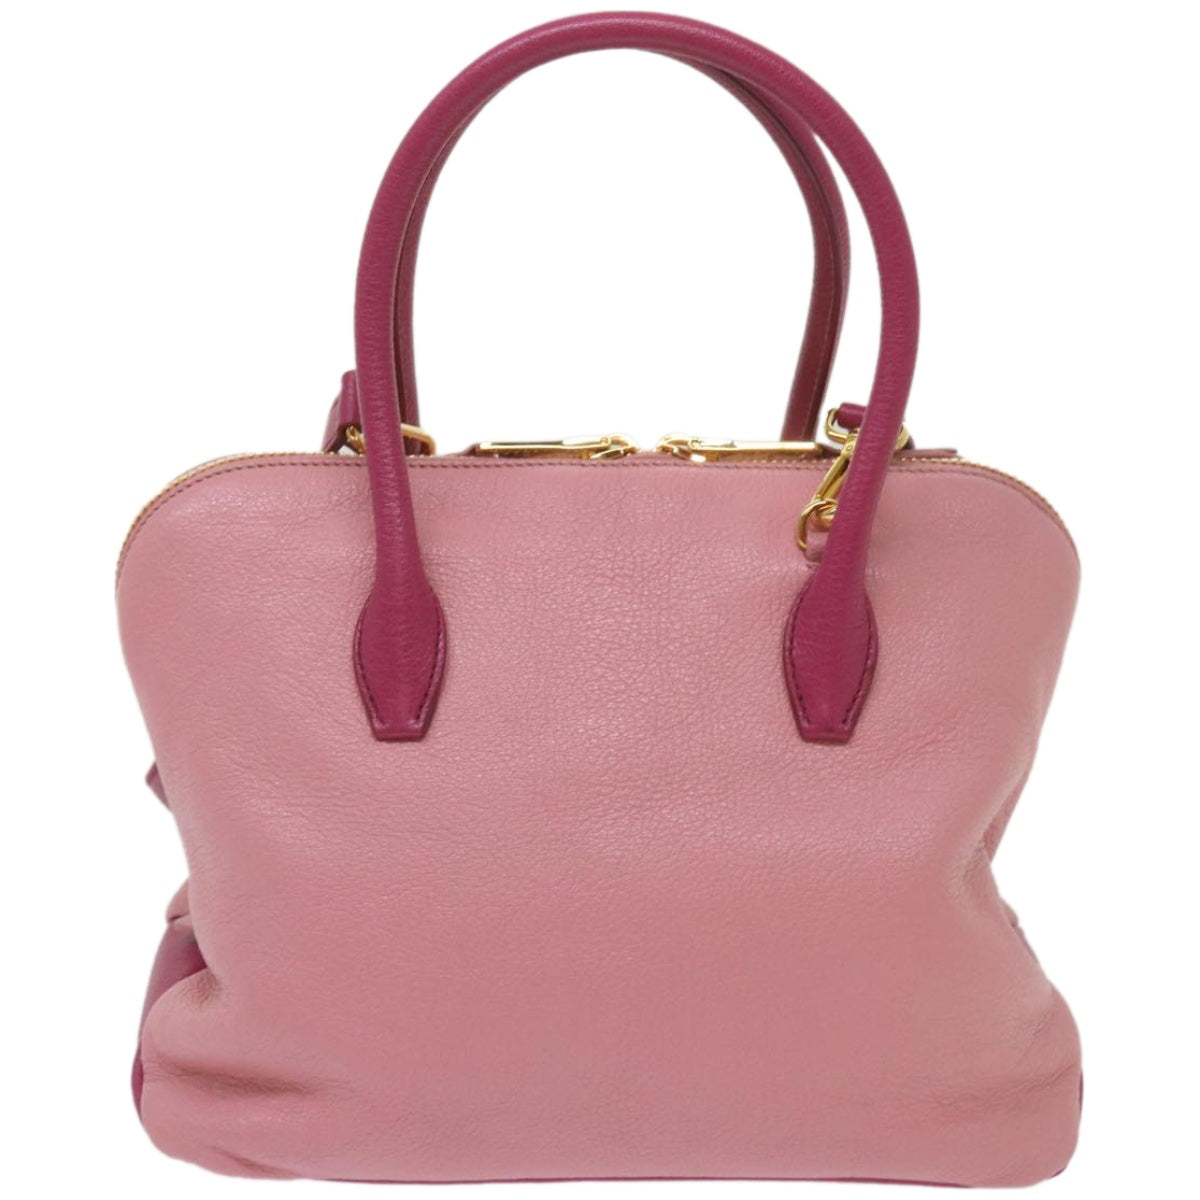 Miu Miu Hand Bag Leather 2way Pink Auth yk10851 - 0